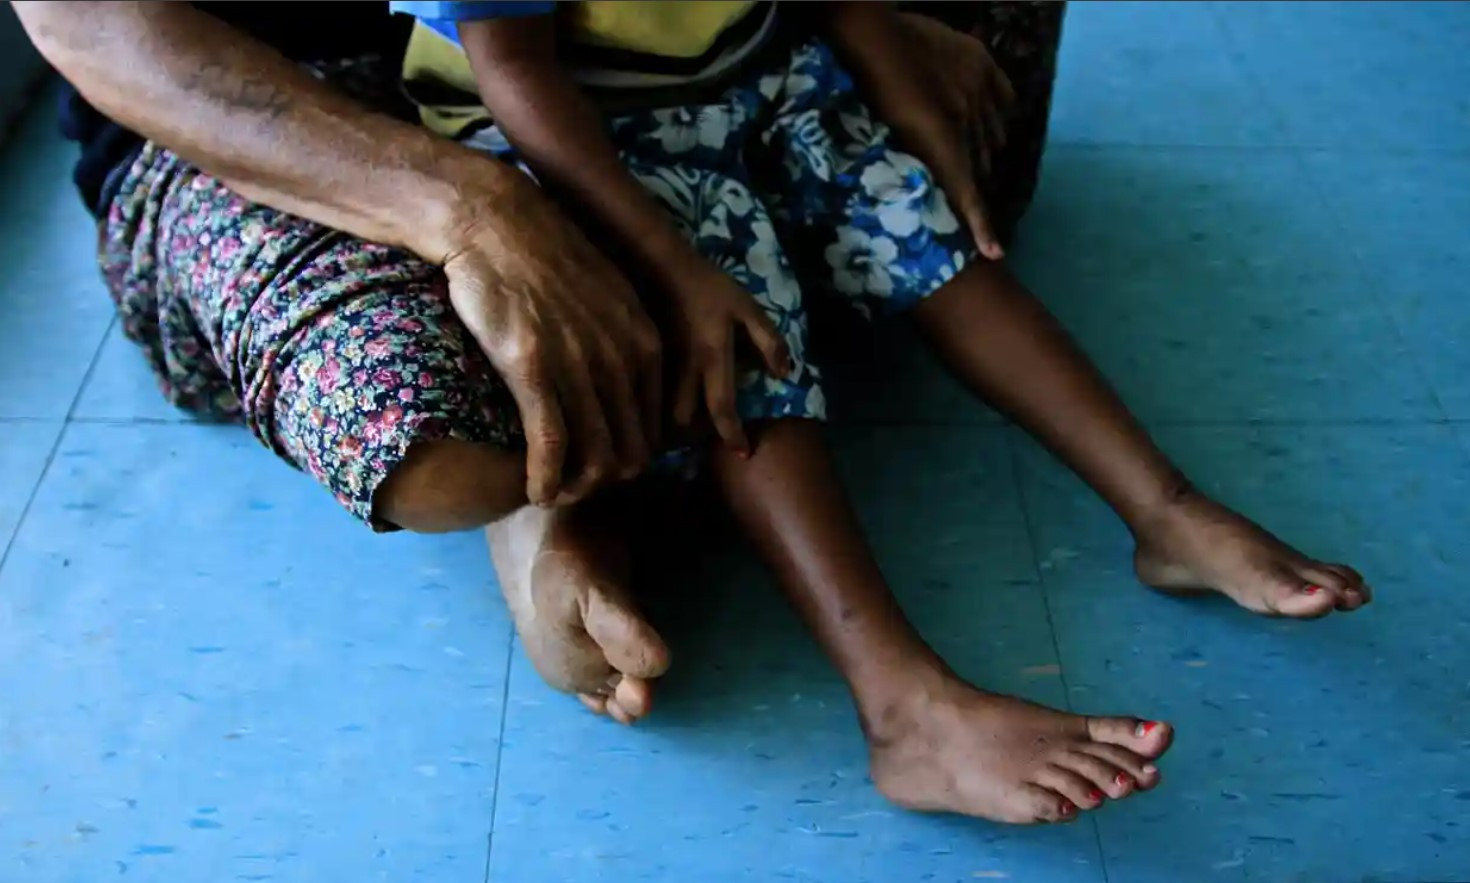 Buôn bán trẻ em đã được xác định là một vấn đề đáng lo ngại ở Papua New Guinea, đặc biệt là đối với trẻ em sống trên đường phố. Ảnh: Helen Davidson.